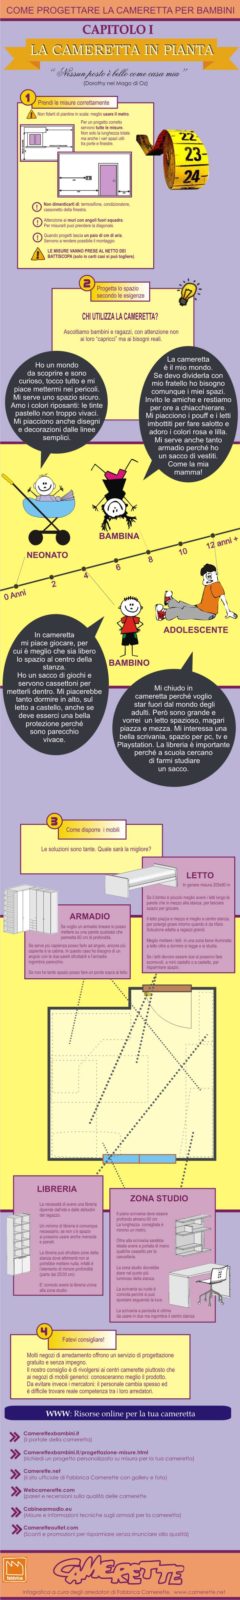 infografica_camerette